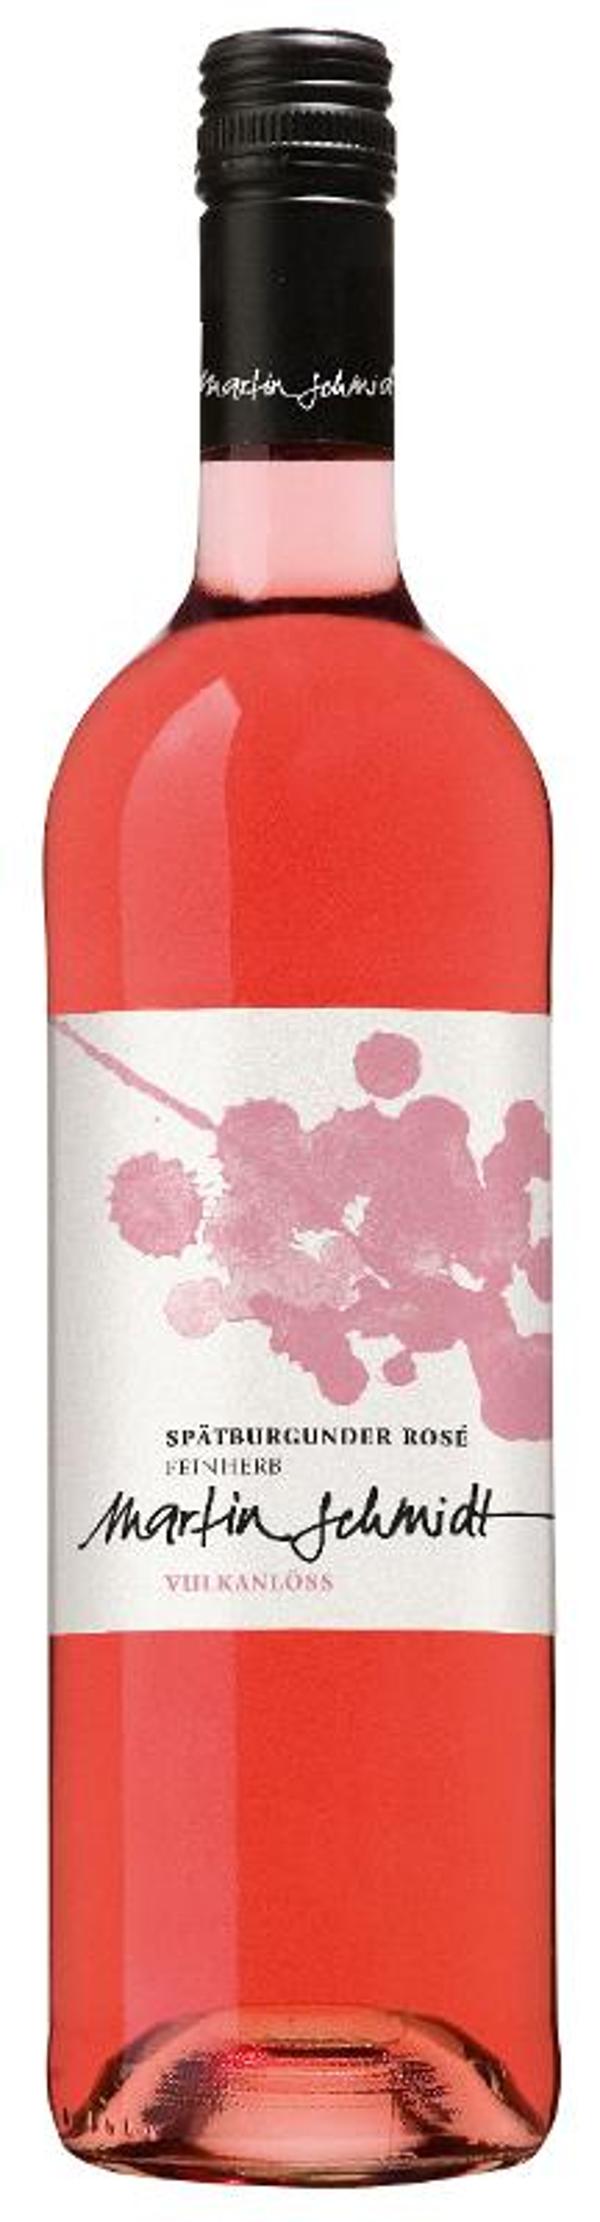 Produktfoto zu Vulkanlöss rosé